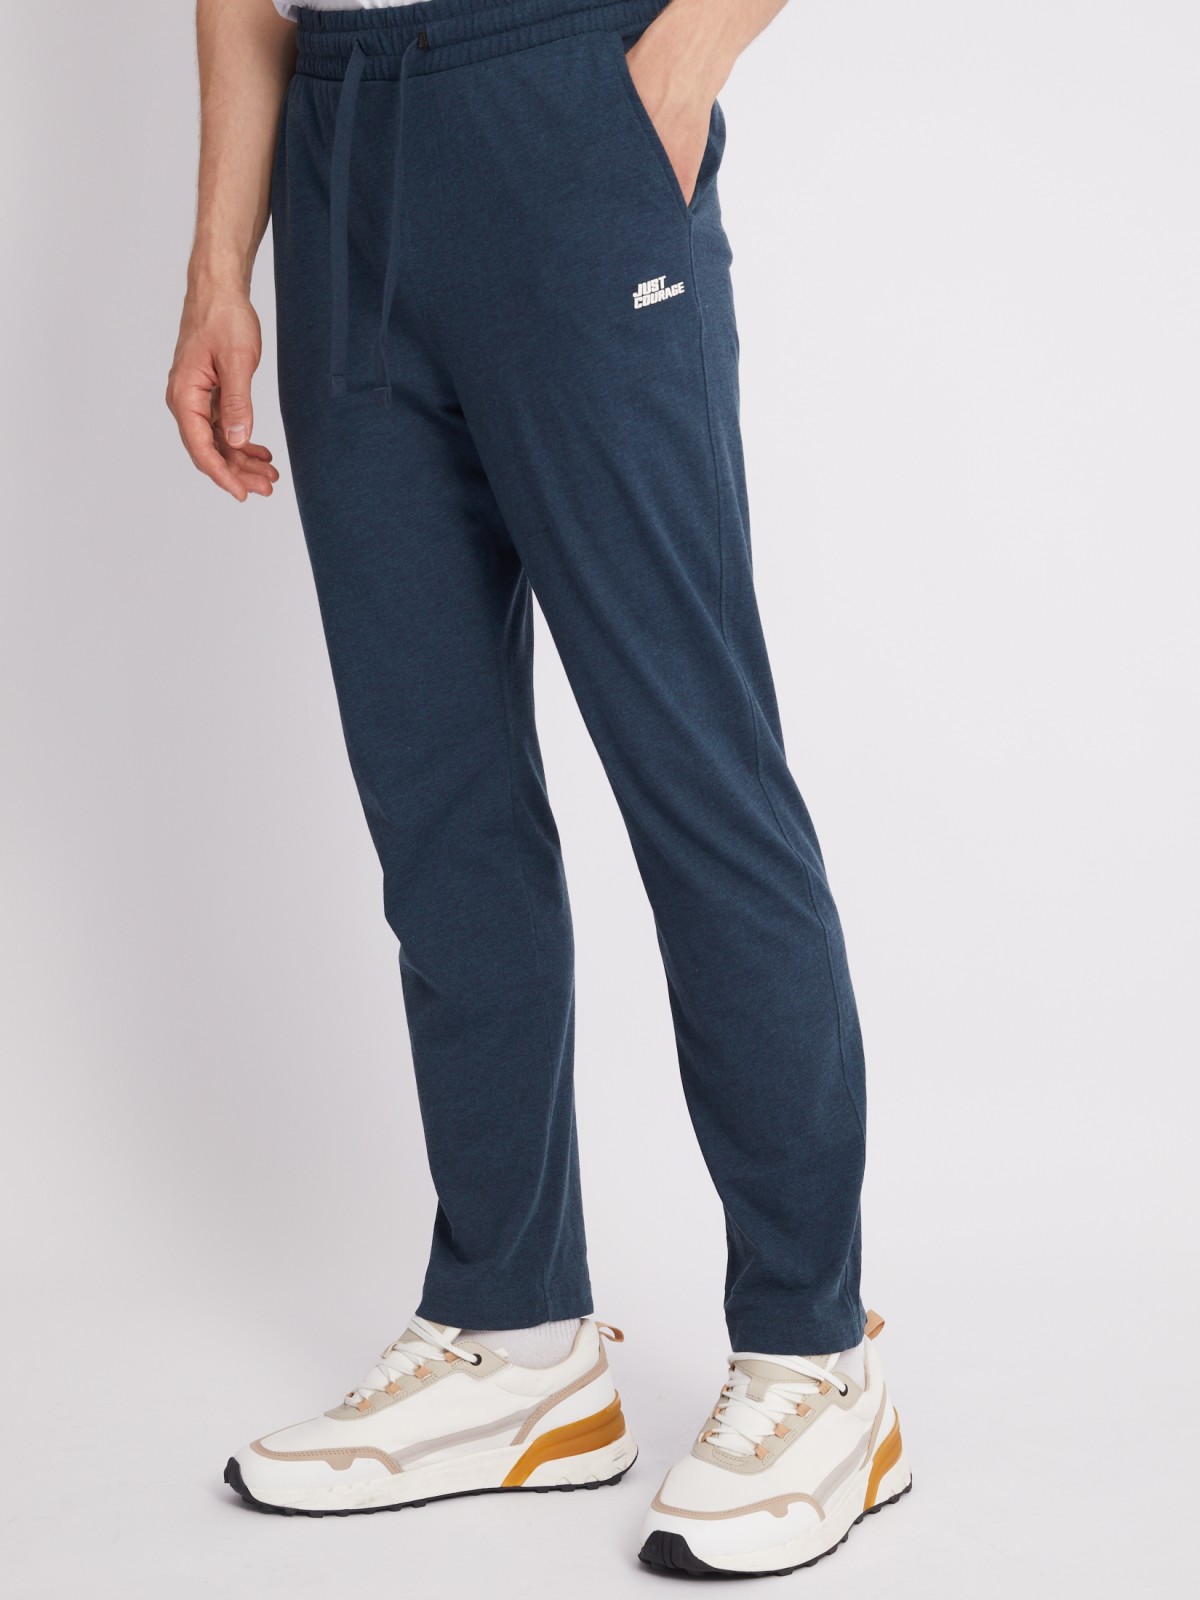 Трикотажные брюки в спортивном стиле zolla 01331765Q022, цвет темно-бирюзовый, размер S - фото 2